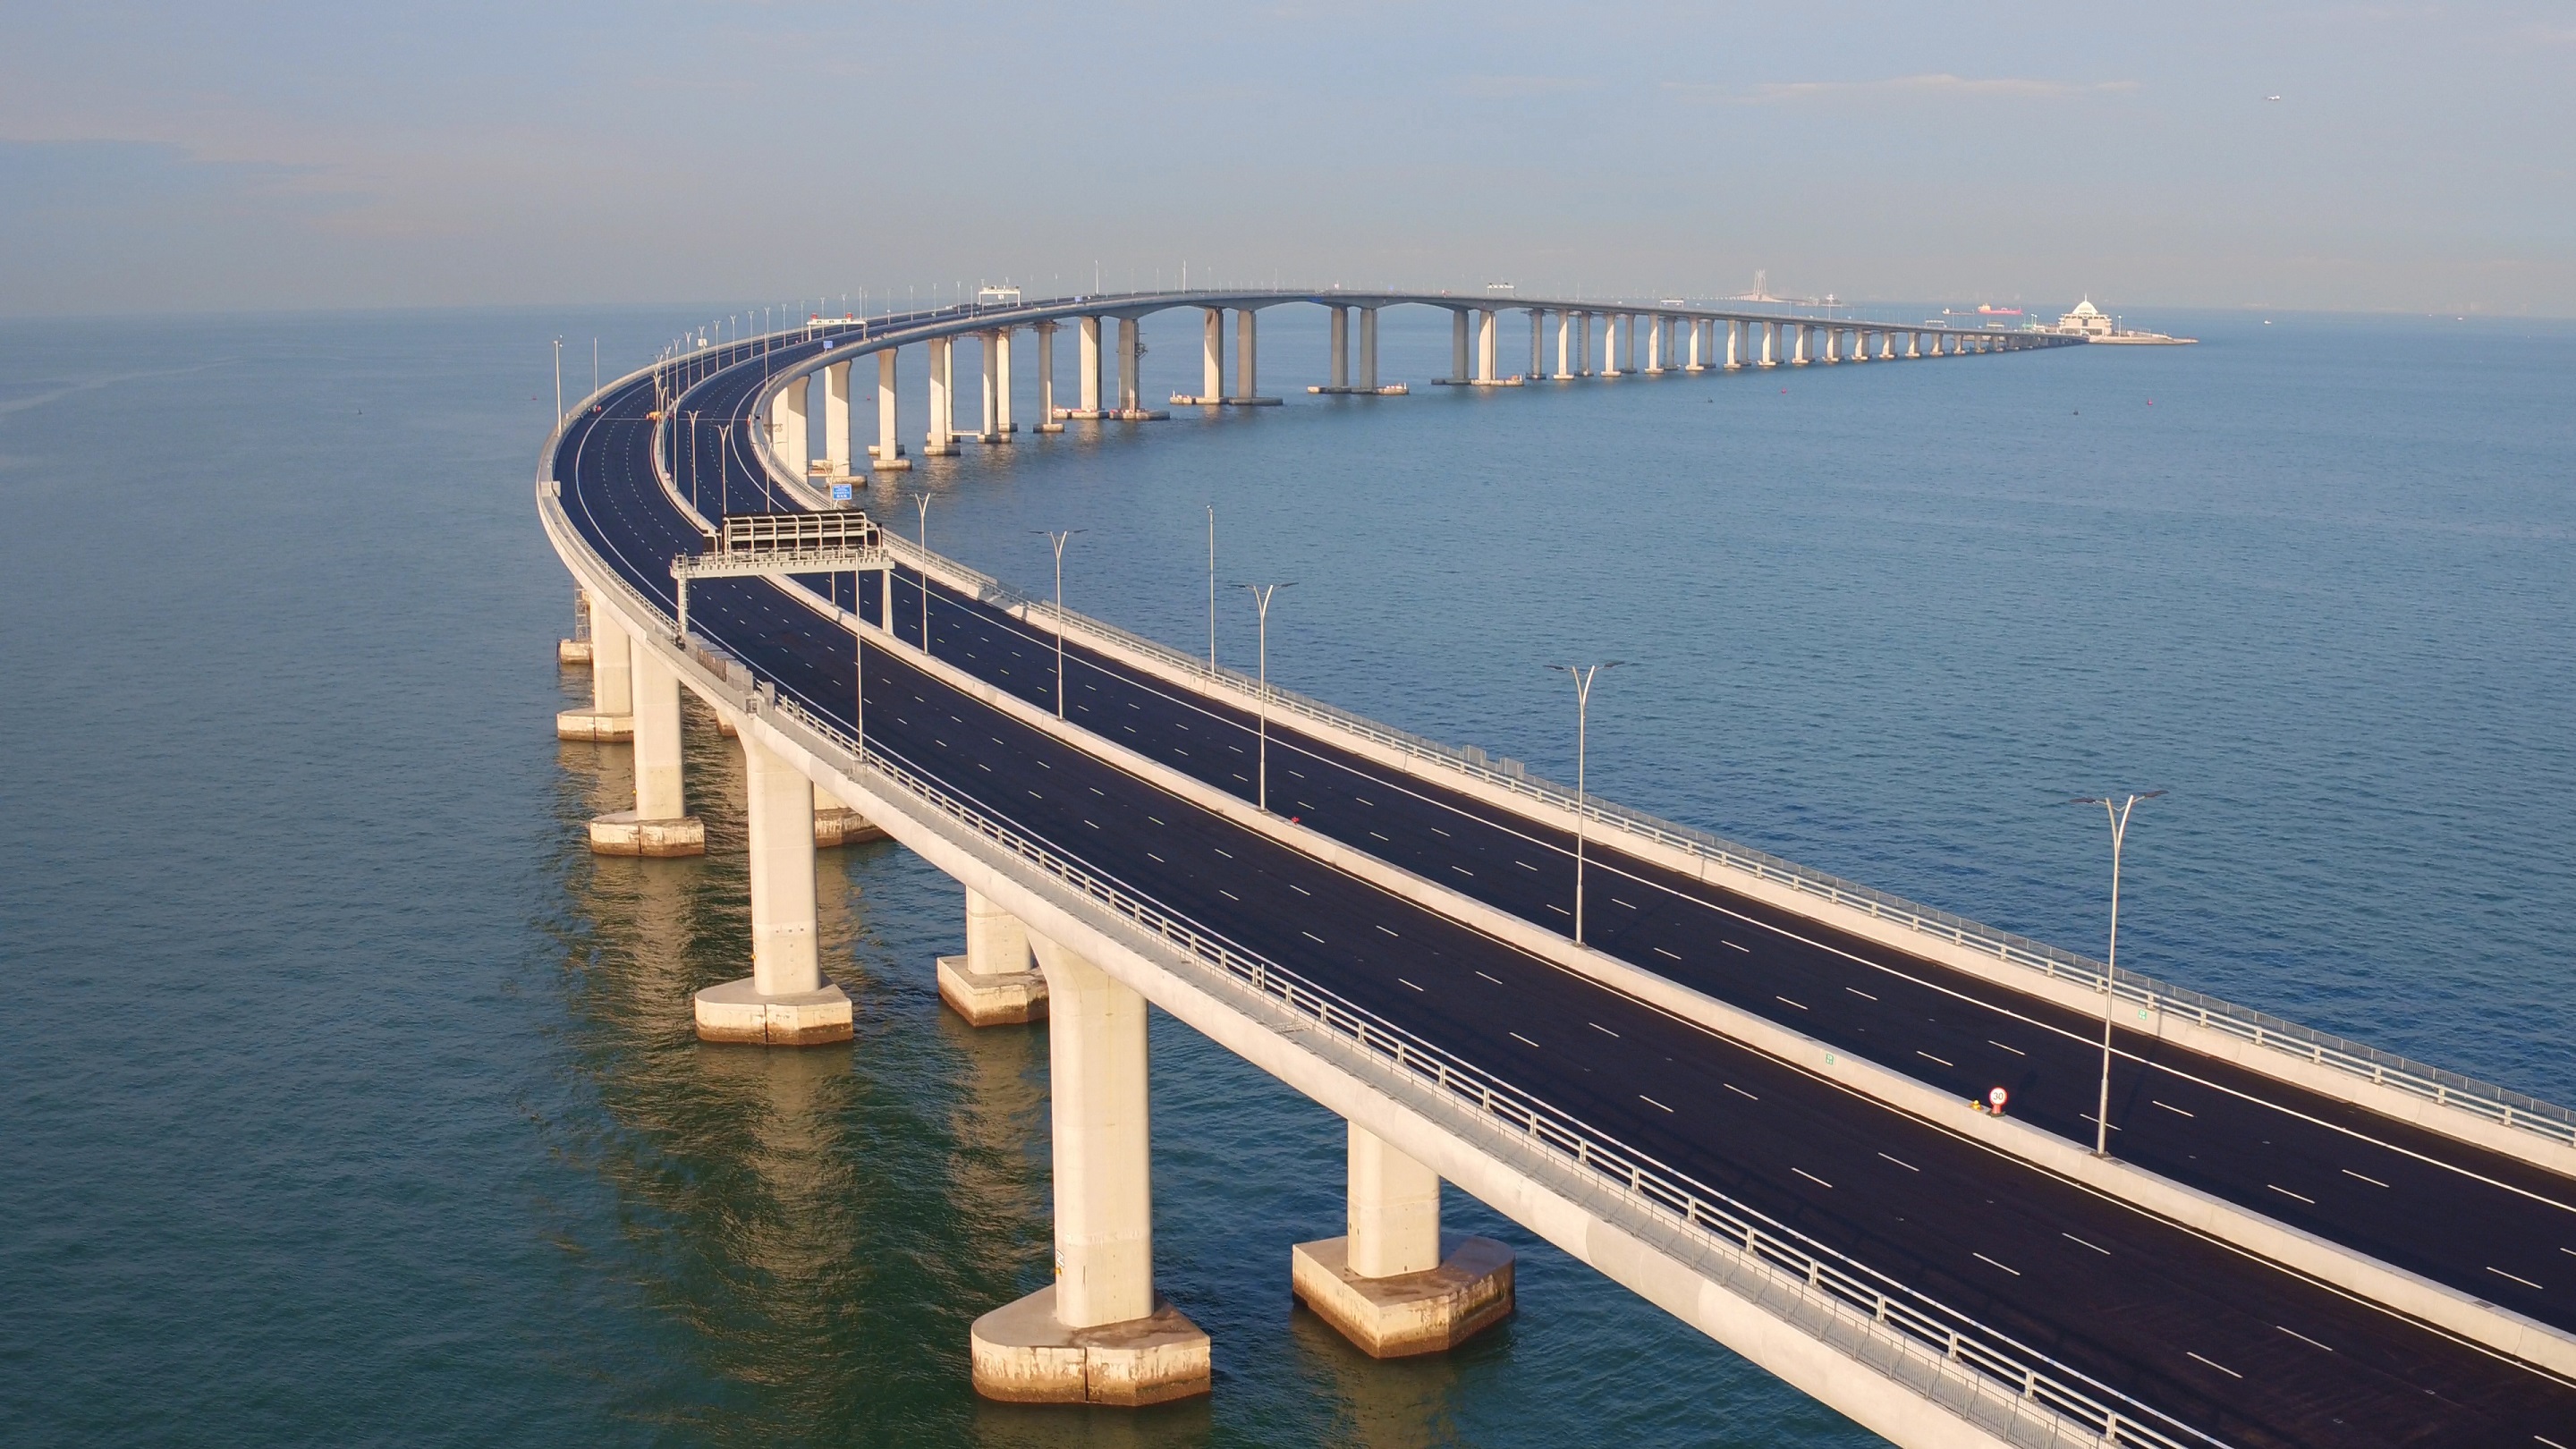 Î‘Ï€Î¿Ï„Î­Î»ÎµÏƒÎ¼Î± ÎµÎ¹ÎºÏŒÎ½Î±Ï‚ Î³Î¹Î± New Bridge to Macau to boost business events industry